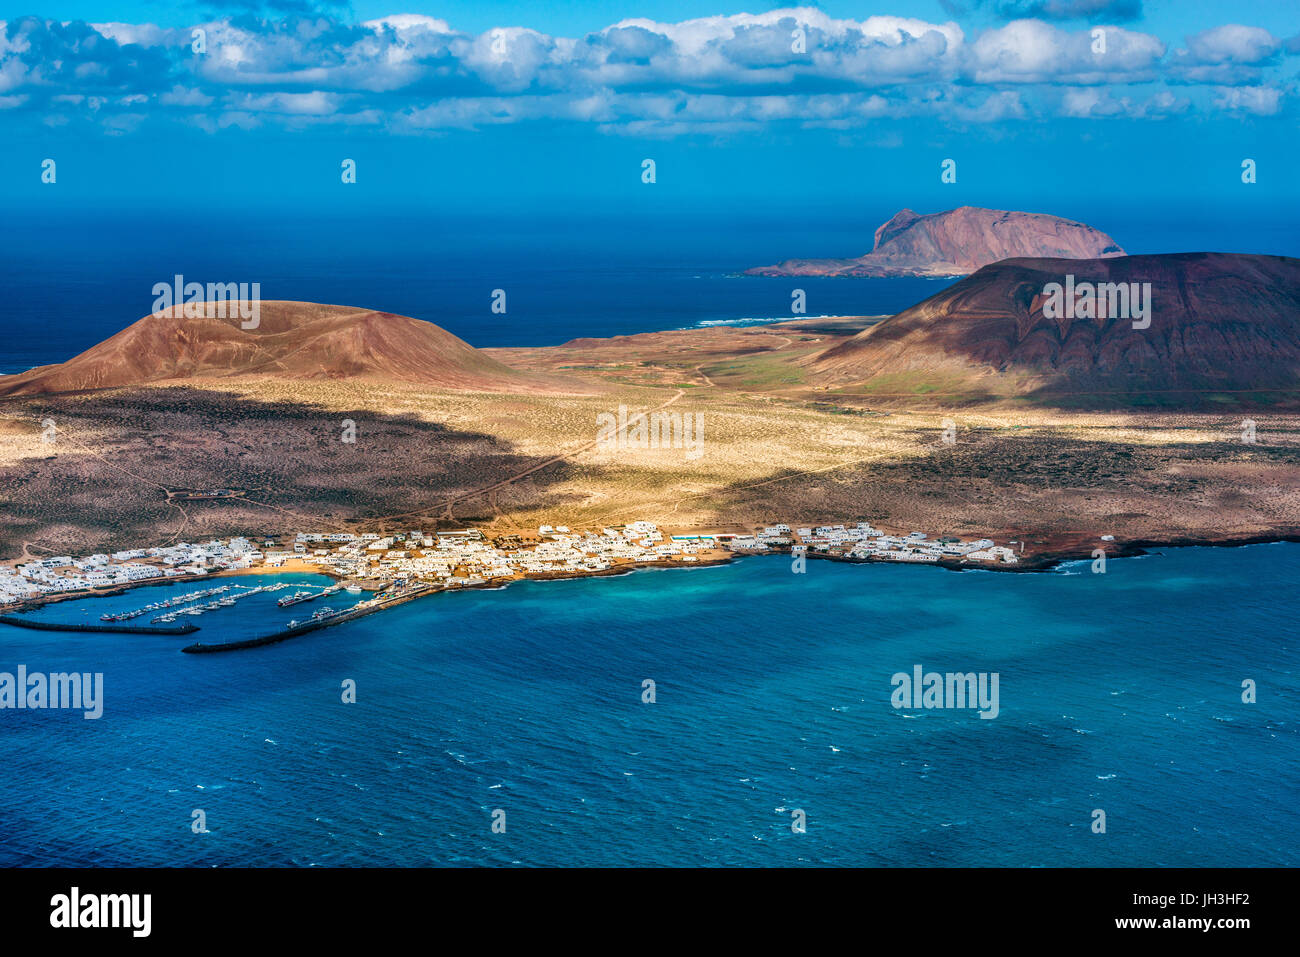 Îles de La Graciosa et Montana Clara au large de la côte nord de Lanzarote, îles Canaries, Espagne Banque D'Images